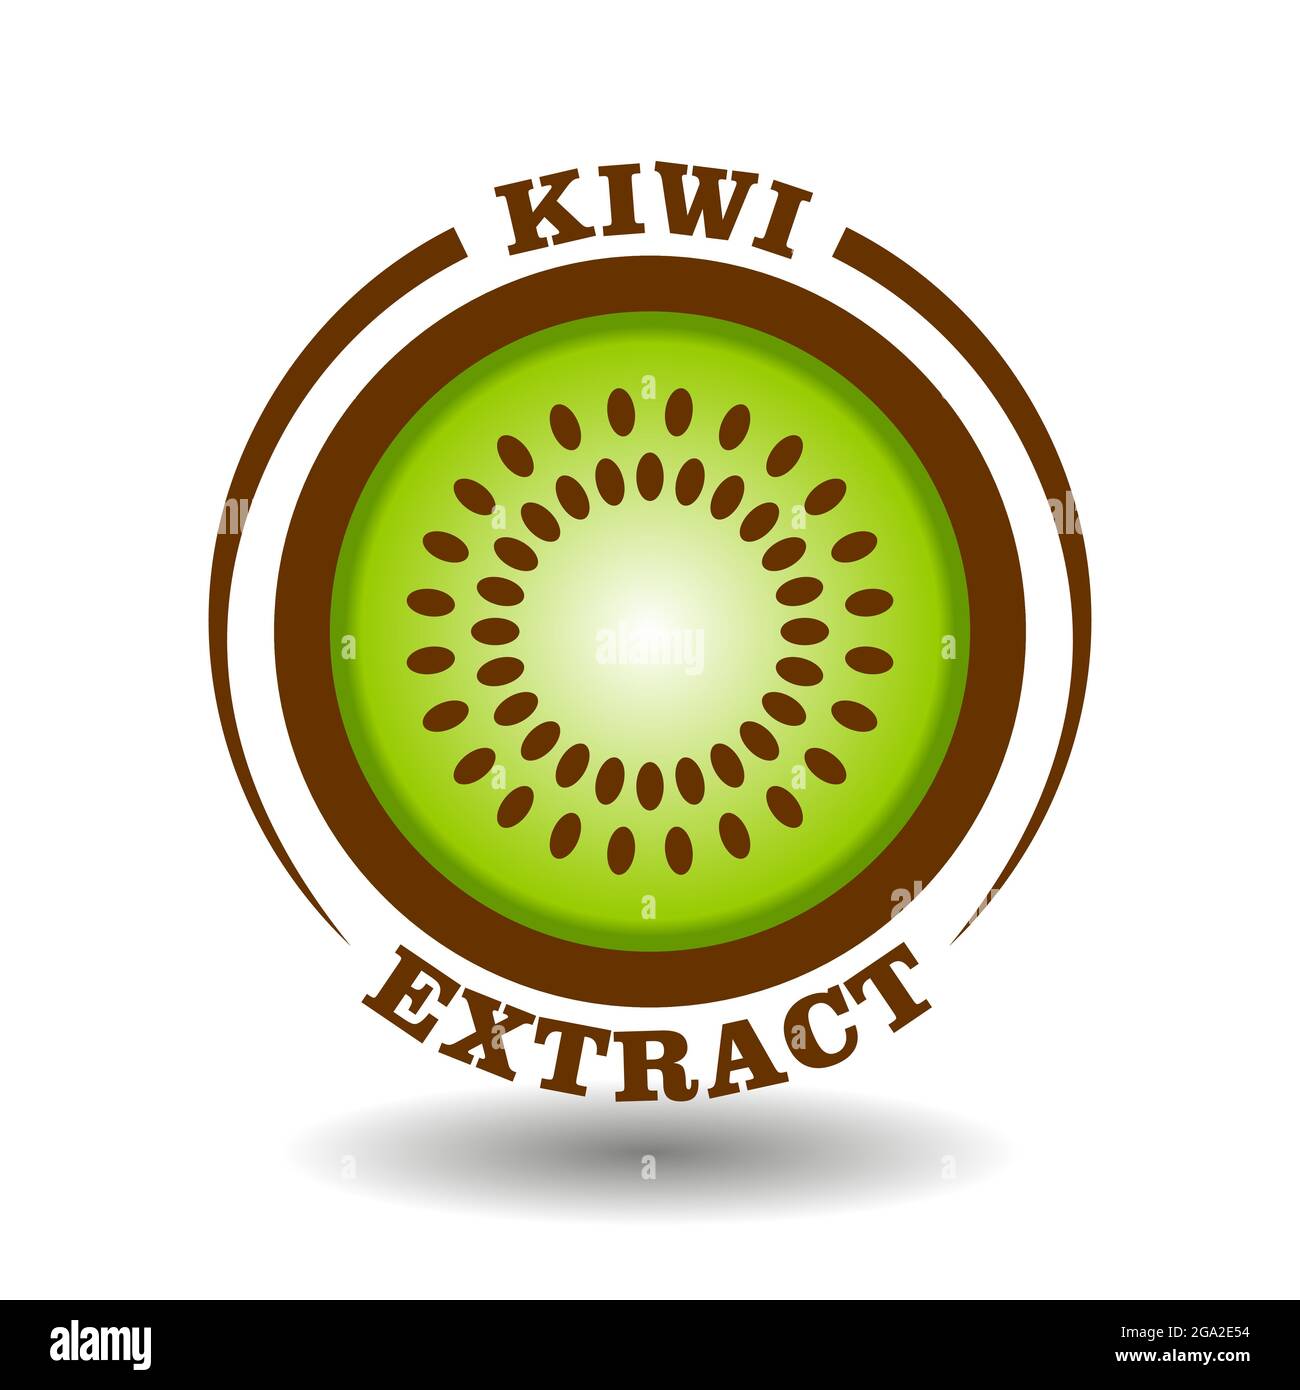 Le logo cercle créatif Kiwi avec demi-coupe ronde de l'icône de tranche de fruits et le symbole de graines circulaires pour l'étiquetage du produit contiennent des kiwis bio naturels extr Illustration de Vecteur